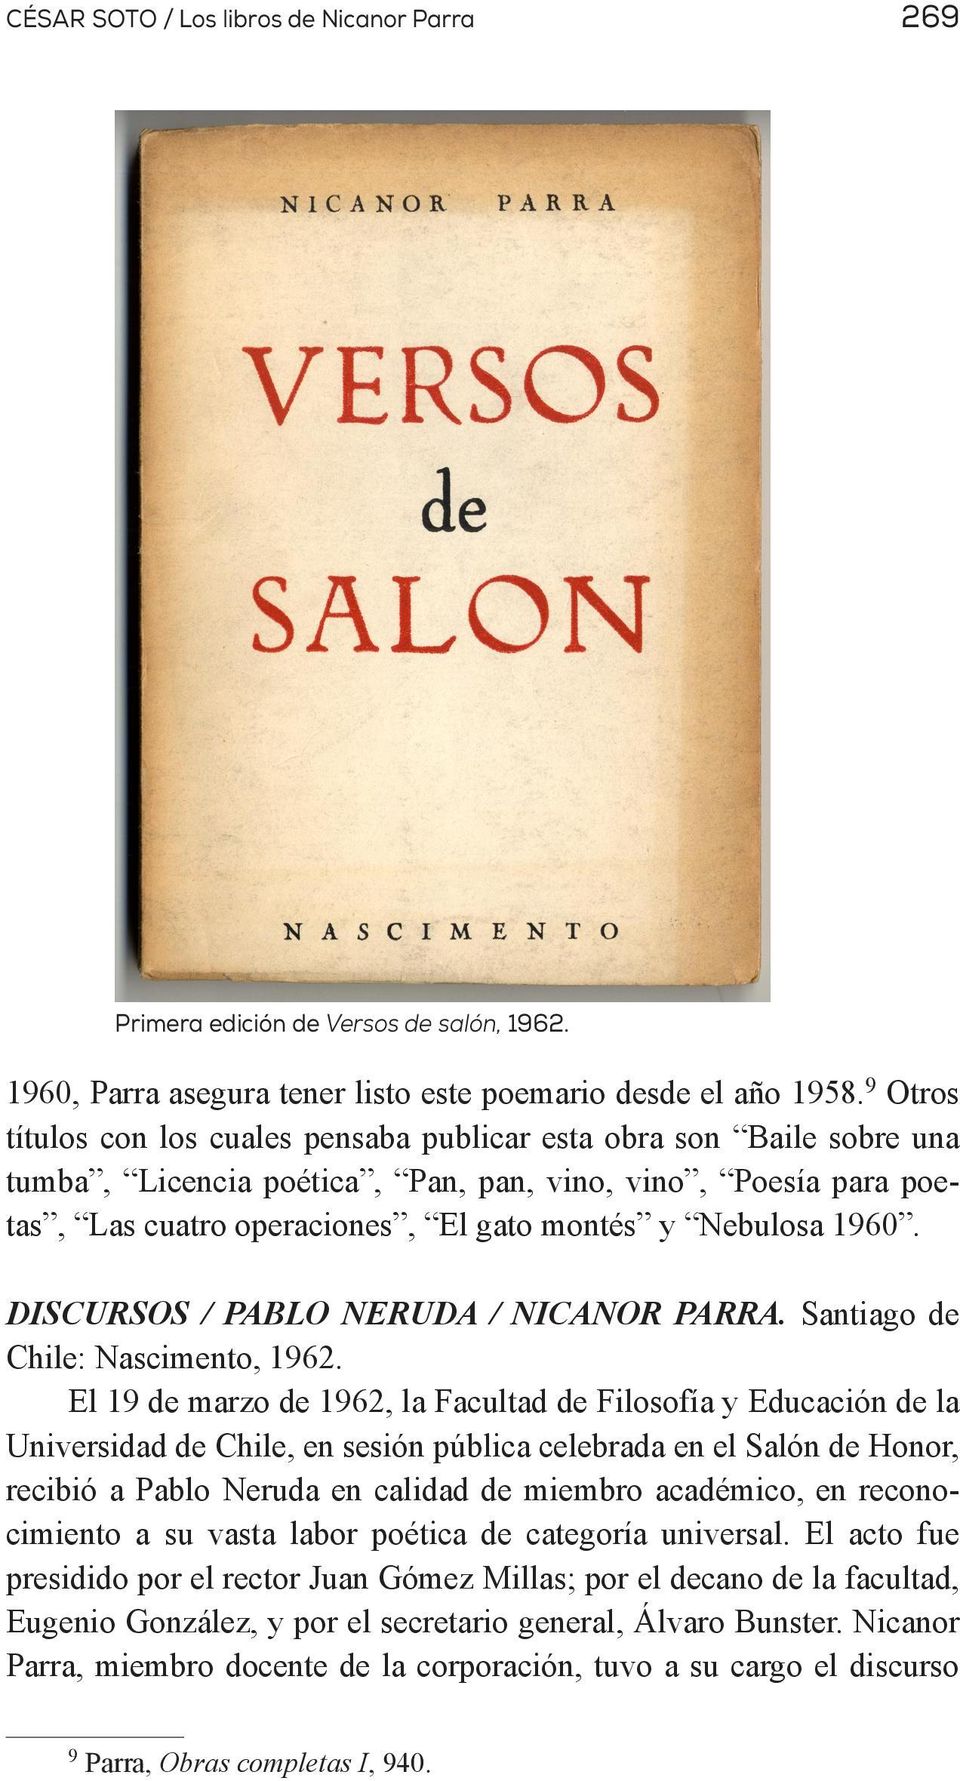 DISCURSOS / PABLO NERUDA / NICANOR PARRA. Santiago de Chile: Nascimento, 1962.